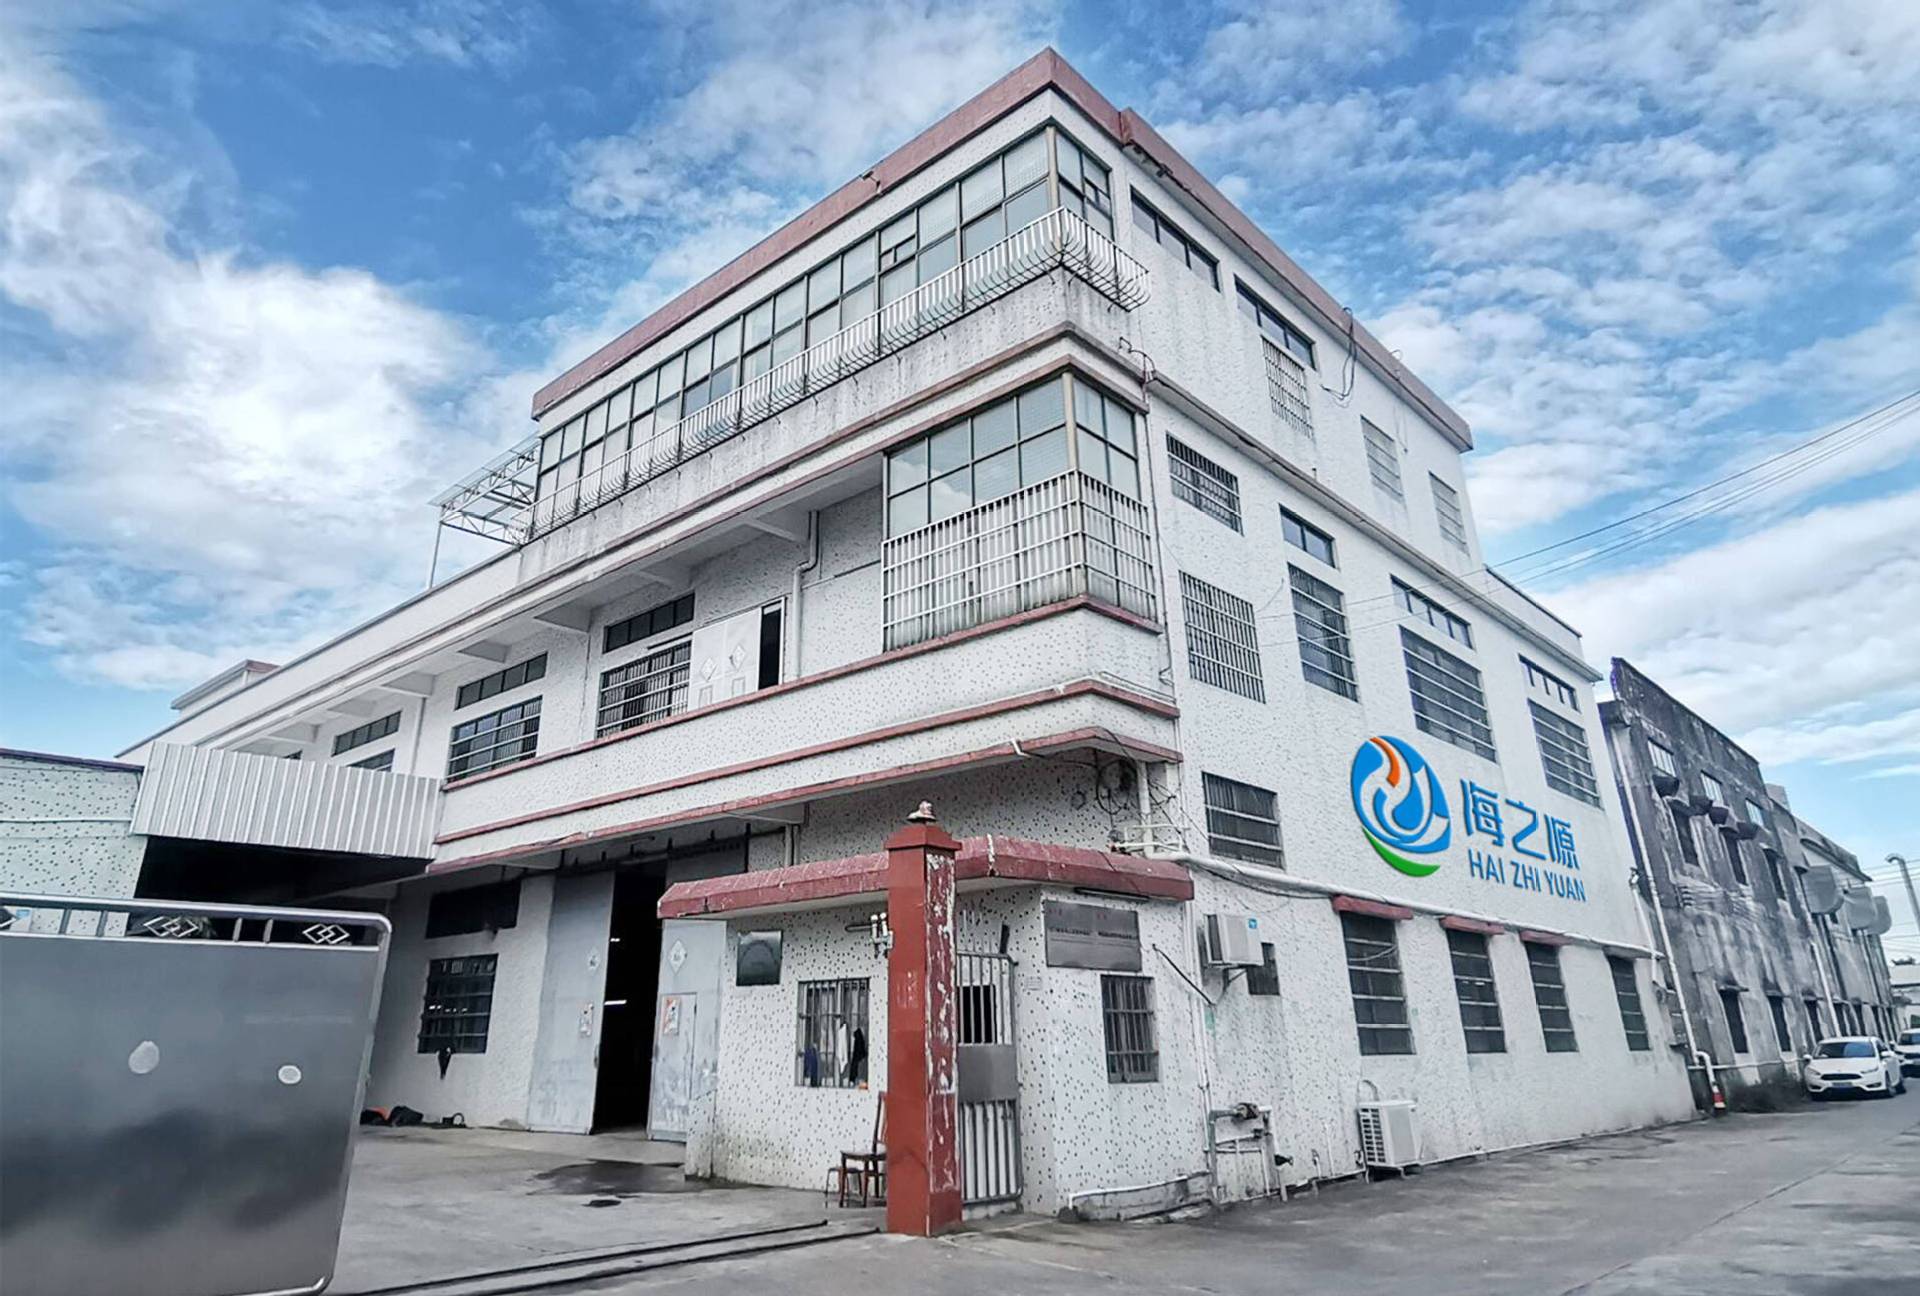   Jiangmen Xinhui Haizhiyuan Plastic Products Factory